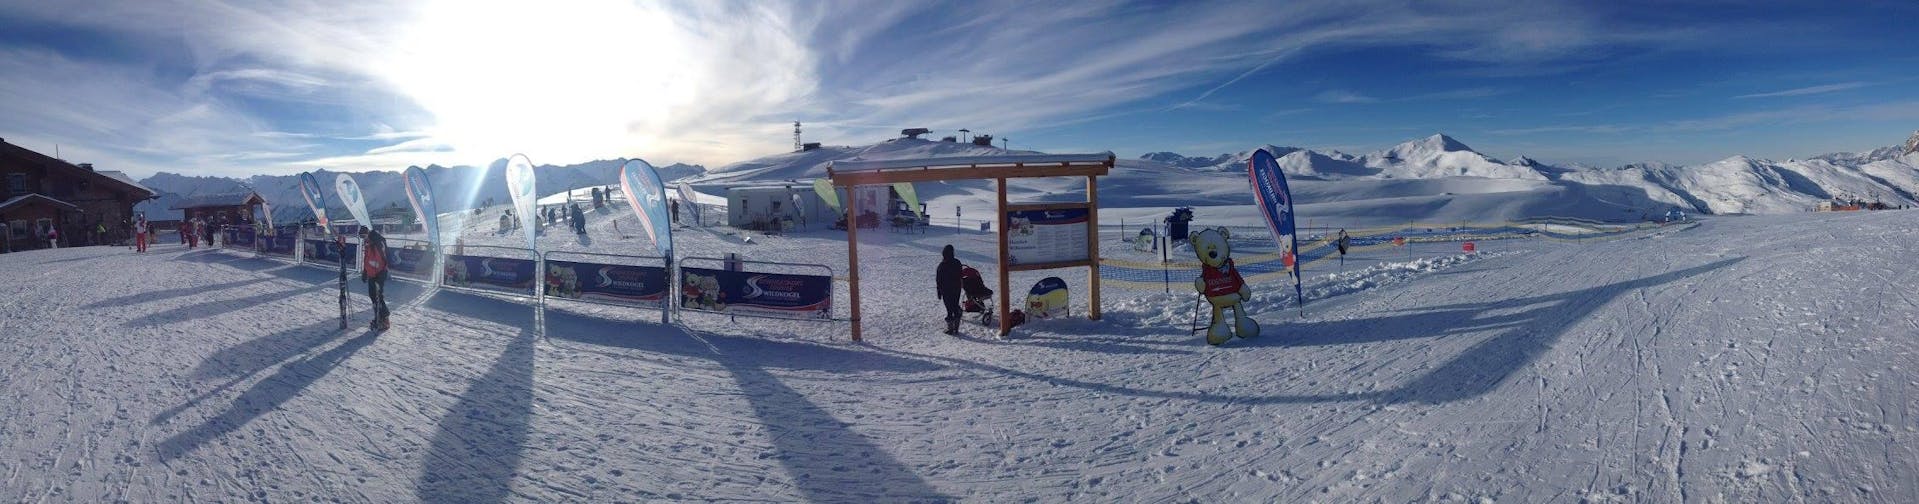 Landschaftlich schöne Pisten beim ganztägigen Kinder-Skikurs (3-14 J.) für alle Levels mit der Schneesportschule Wildkogel.